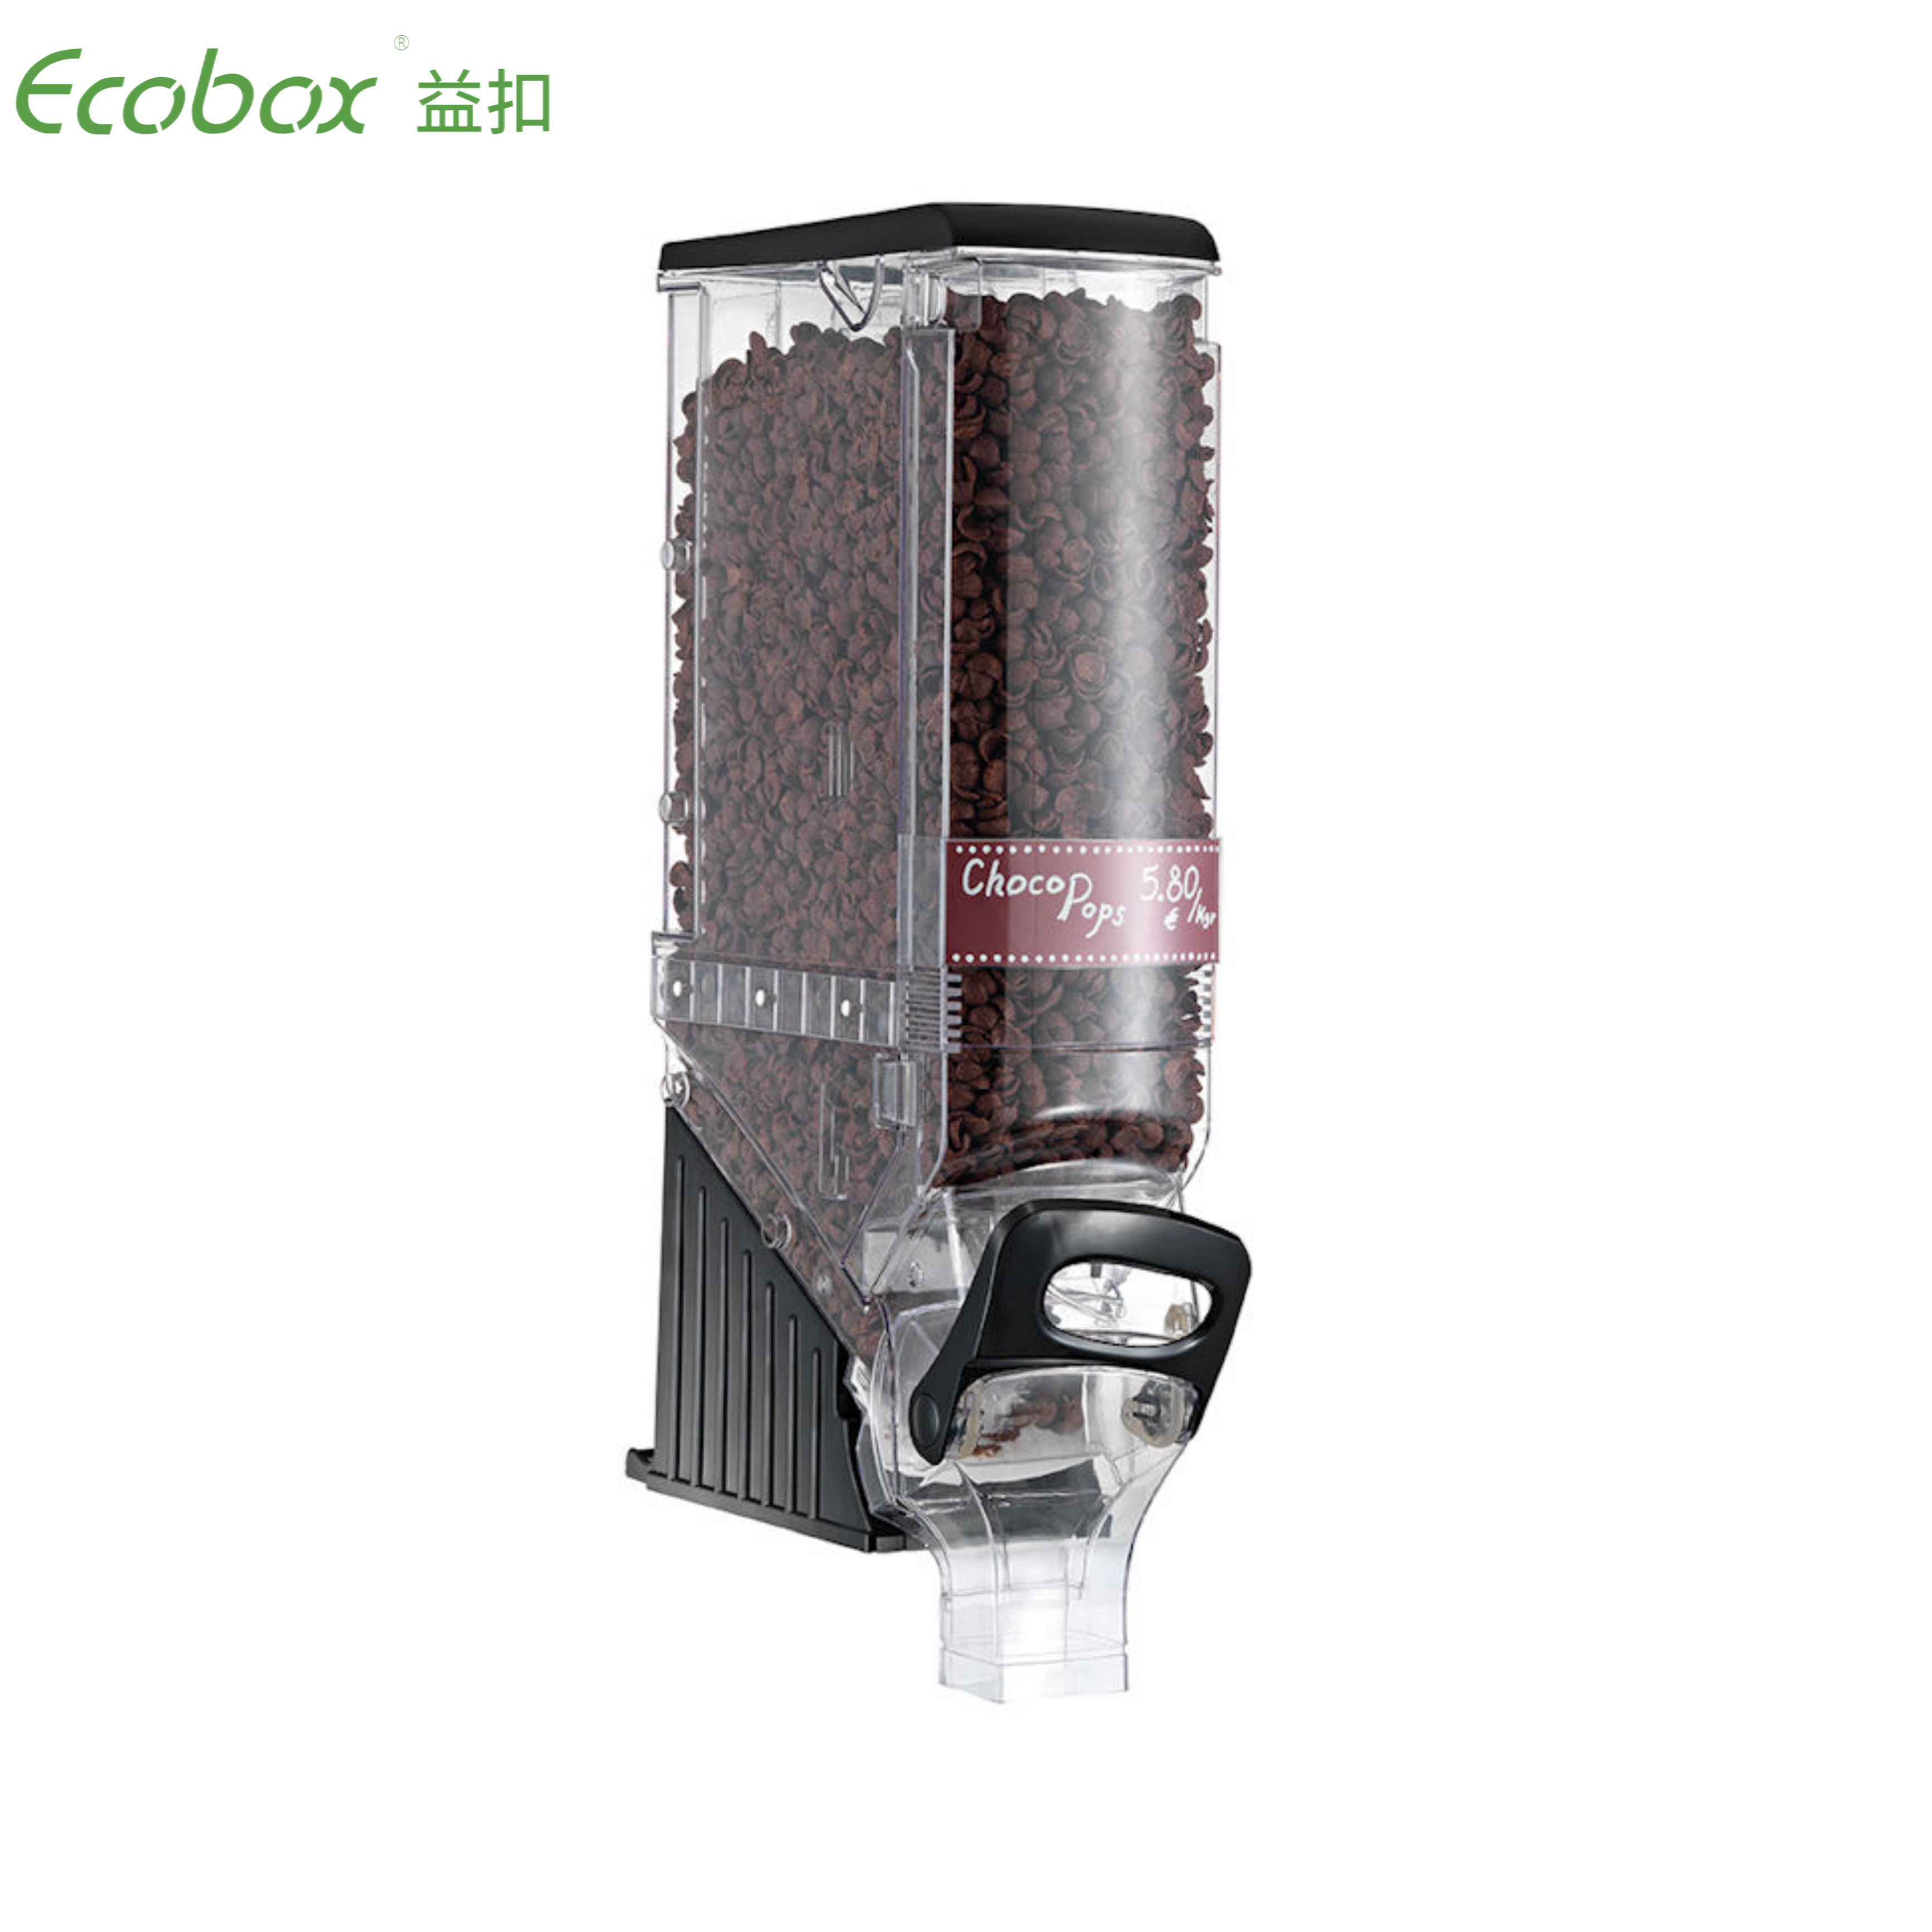 Ecobox ZT-01 19L Schwerkraftspender